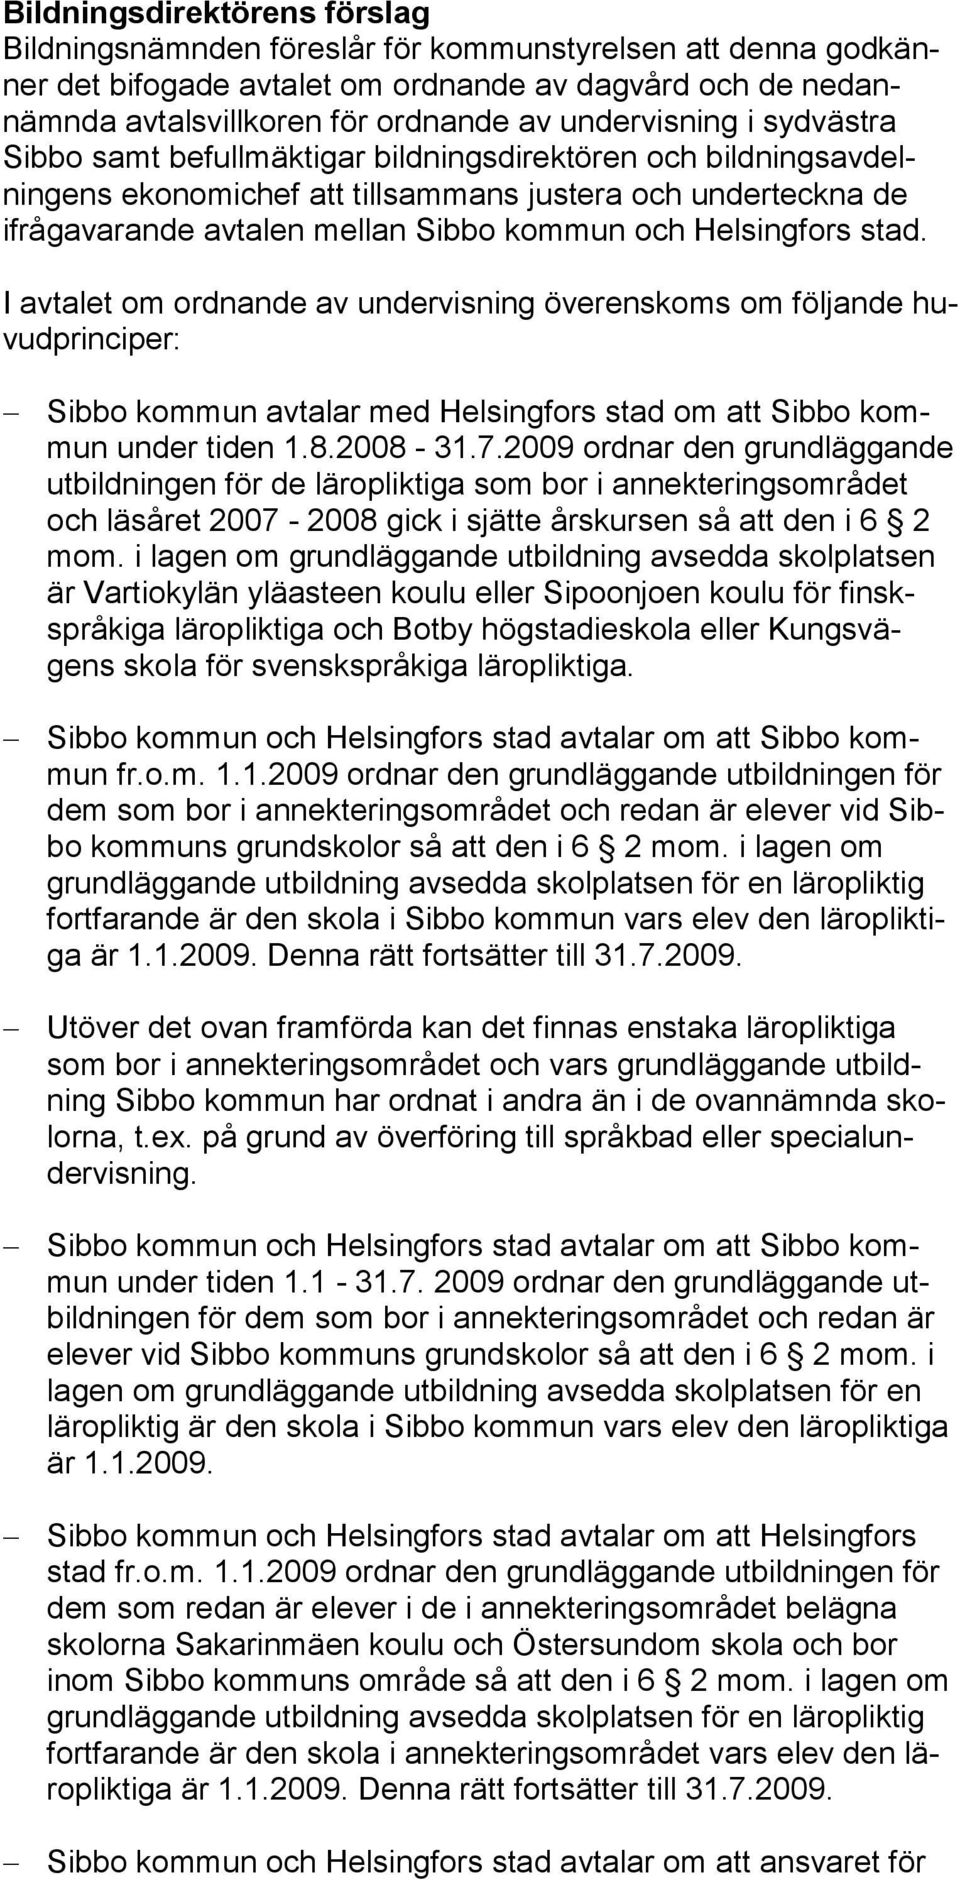 Helsingfors stad. I avtalet om ordnande av undervisning överenskoms om följande huvudprinciper: Sibbo kommun avtalar med Helsingfors stad om att Sib bo kommun under tiden 1.8.2008-31.7.